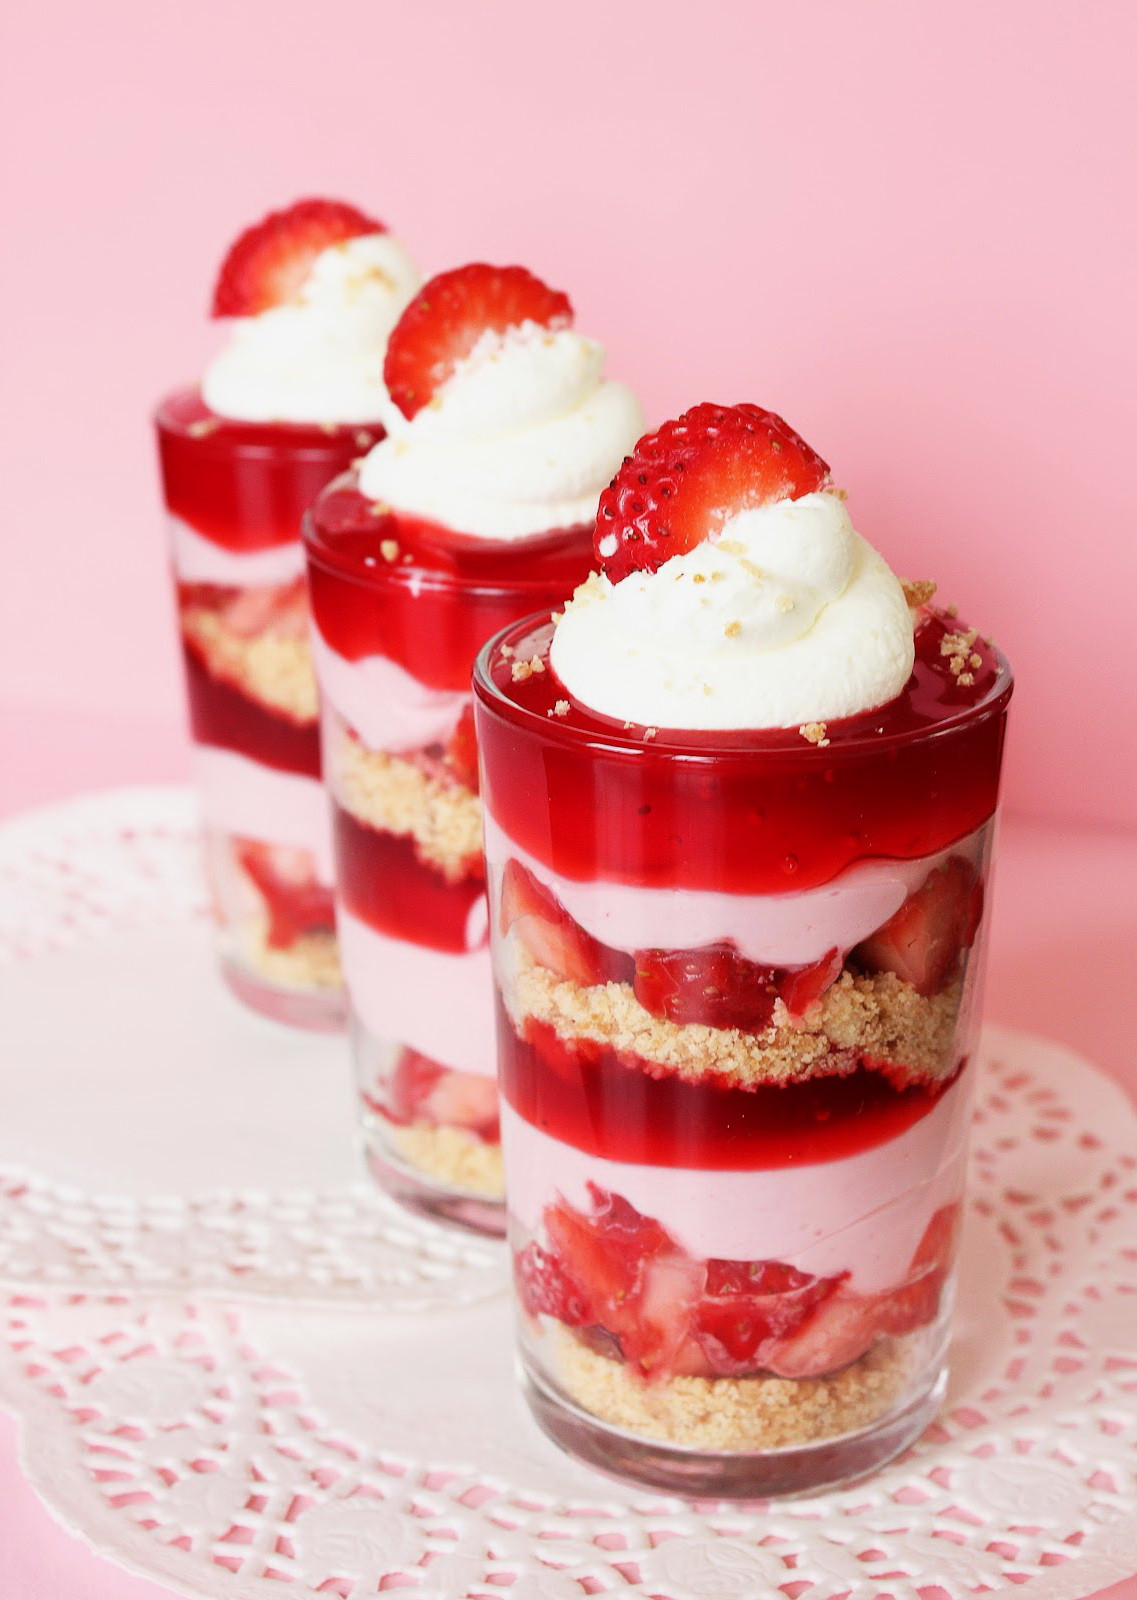 Best Party Desserts
 Strawberry Layered Treat – Best Cheap & Healthy Valentine